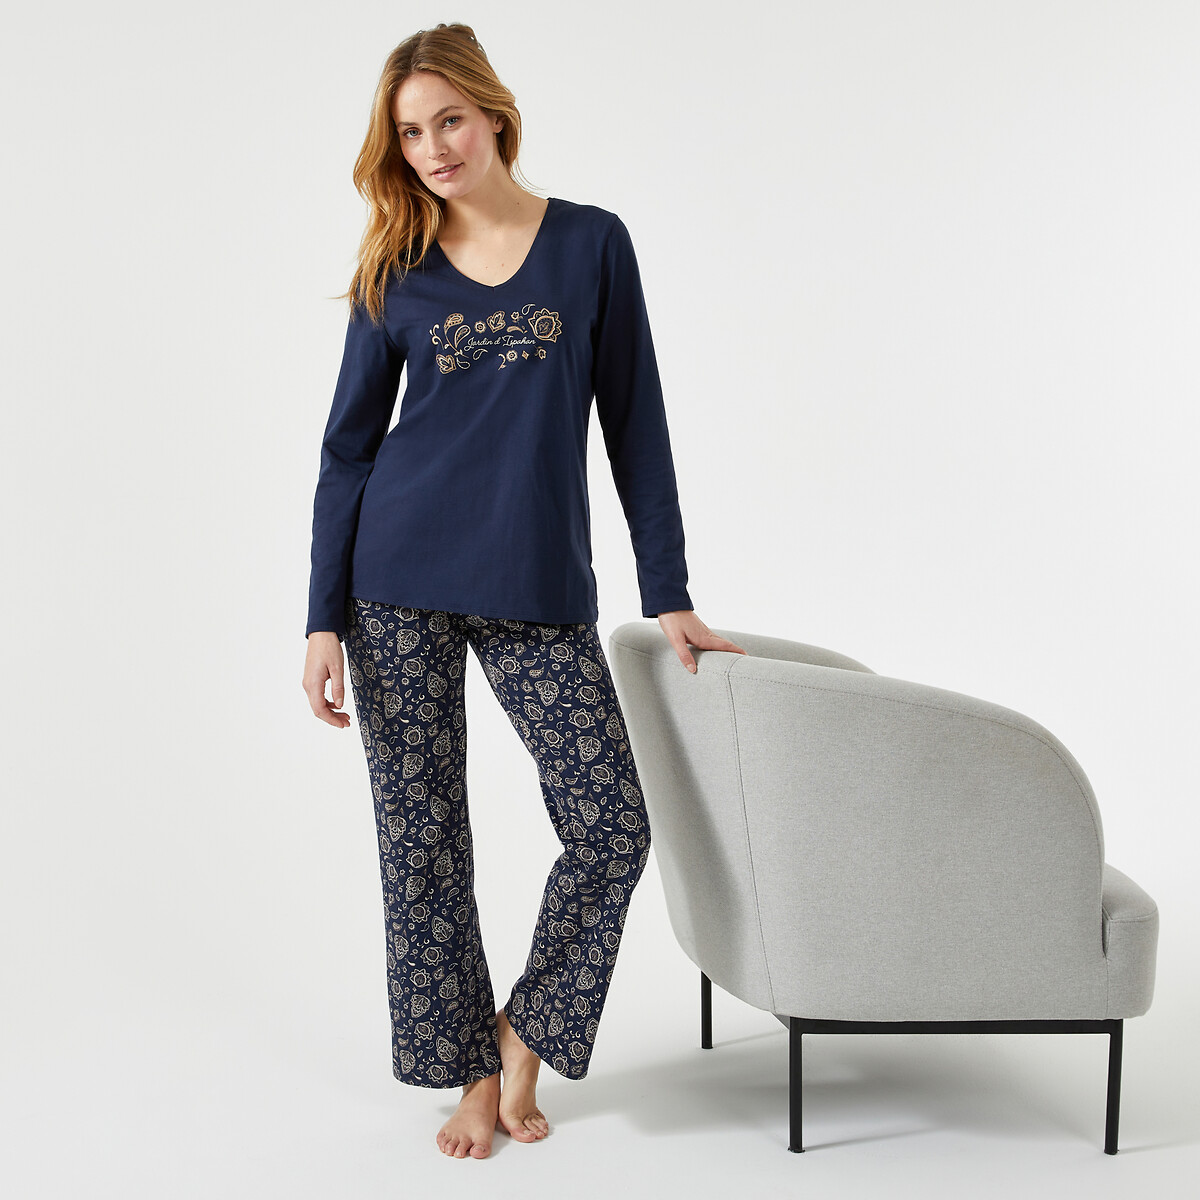 Bedruckter Jersey-Pyjama von Anne weyburn